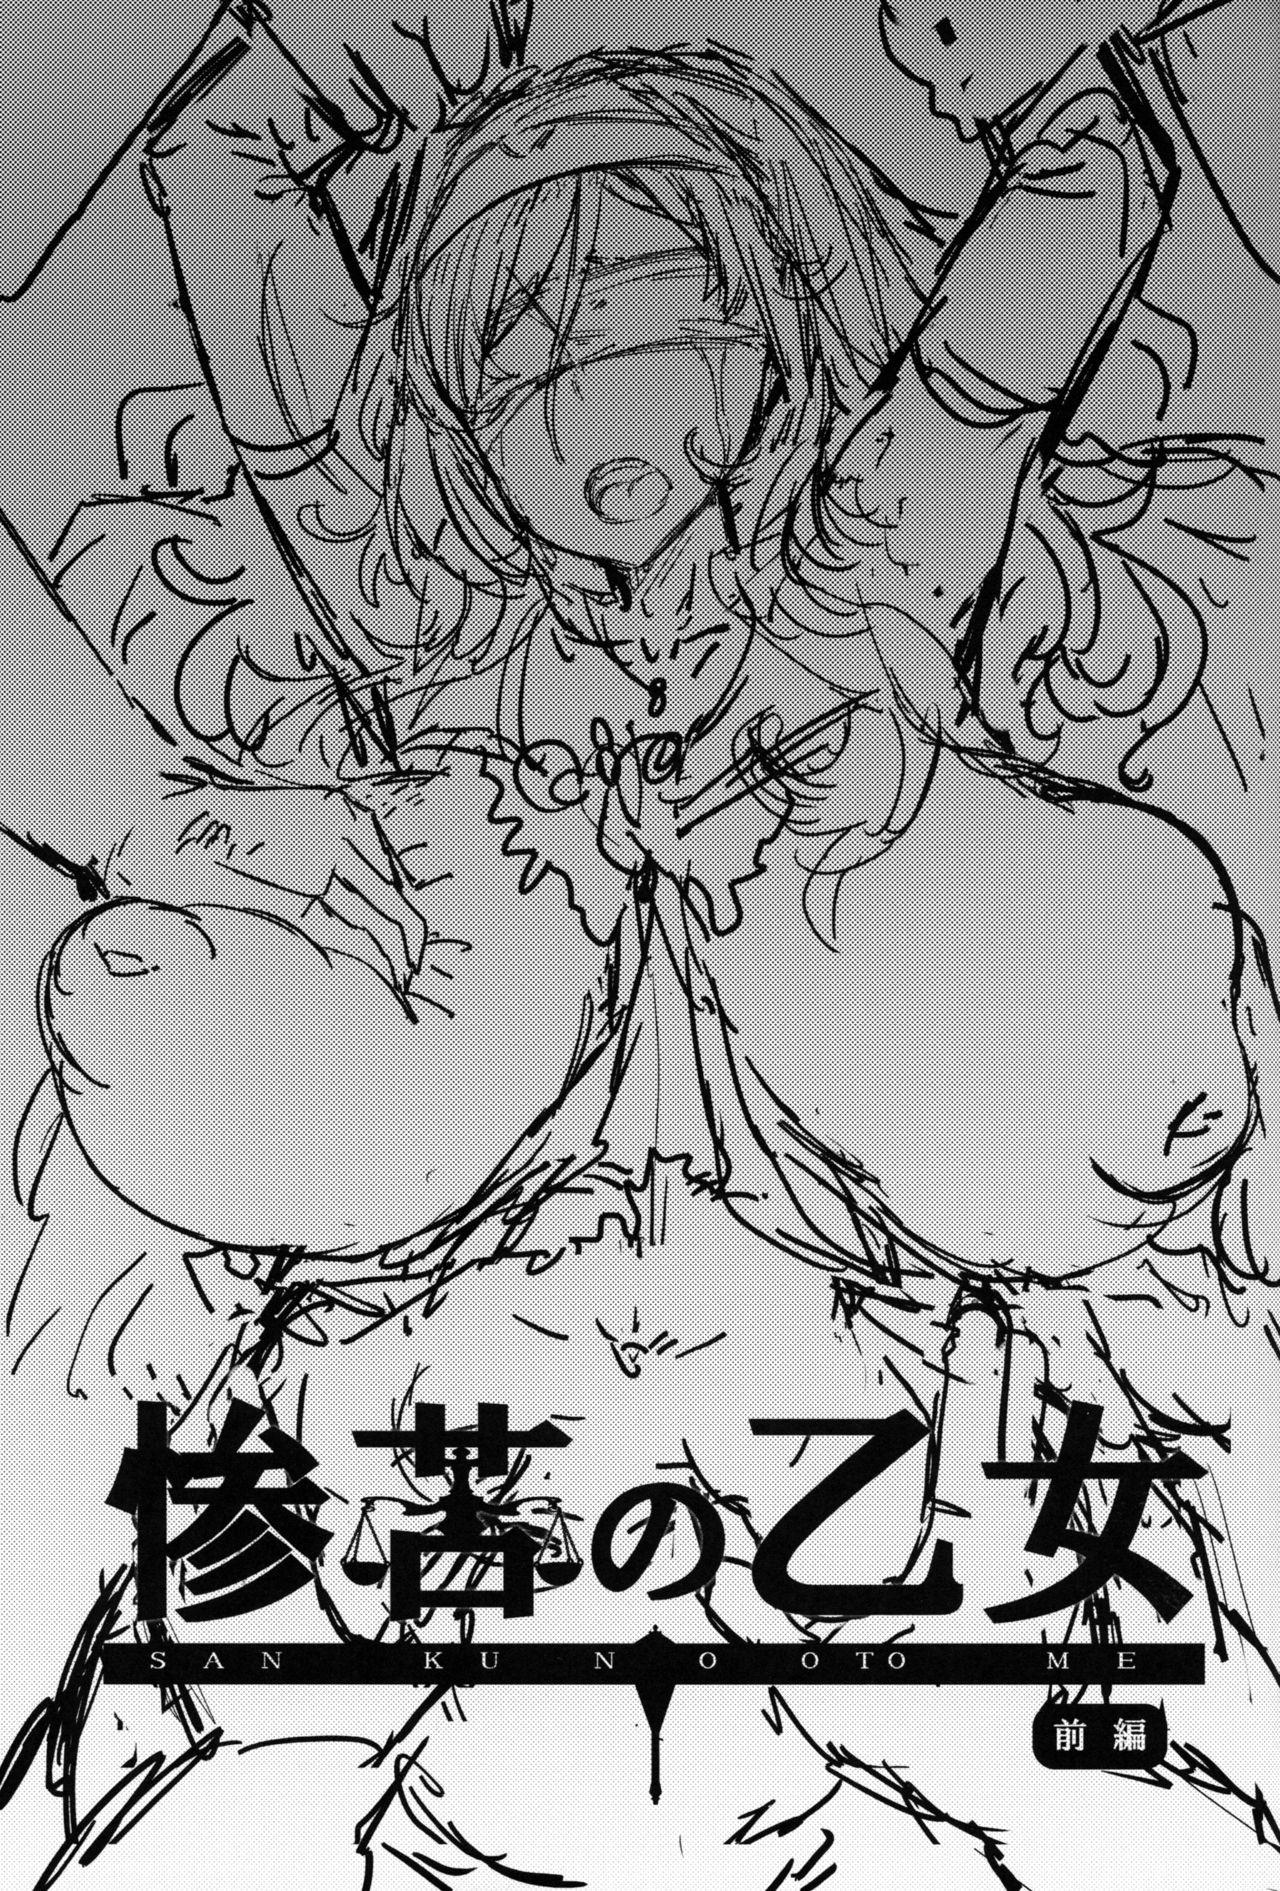 Sexo Sanku no Otome Zenpen - Goblin slayer Verified Profile - Page 2